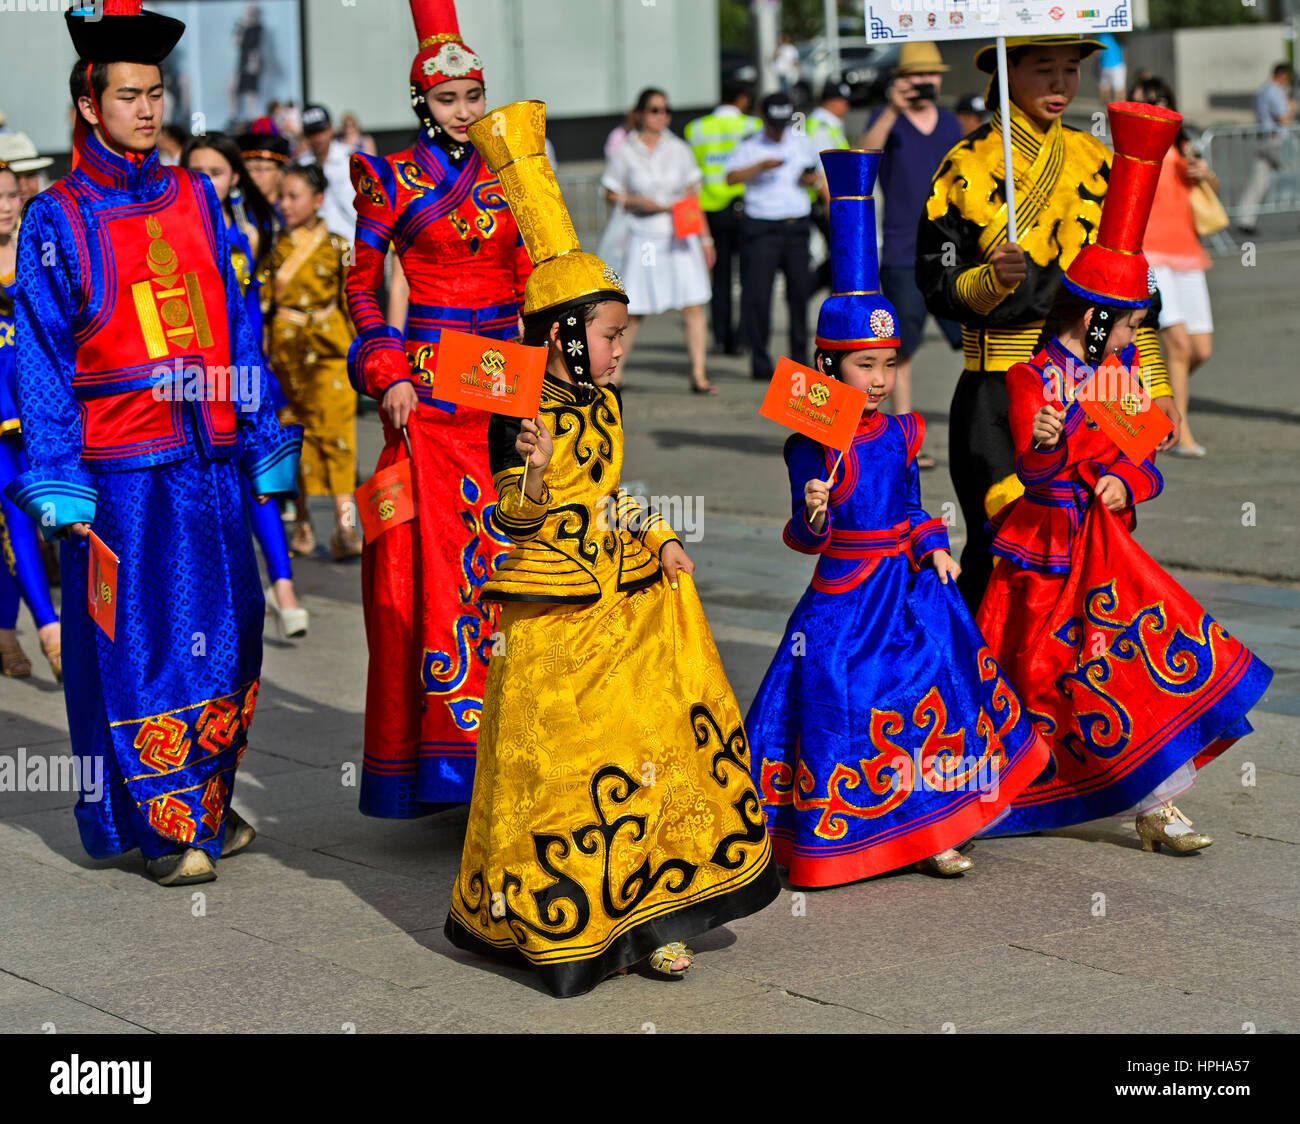 Les enfants et les adolescents en costumes traditionnels deel mongol, Costume National Festival, Ulaanbaatar, Mongolie Banque D'Images